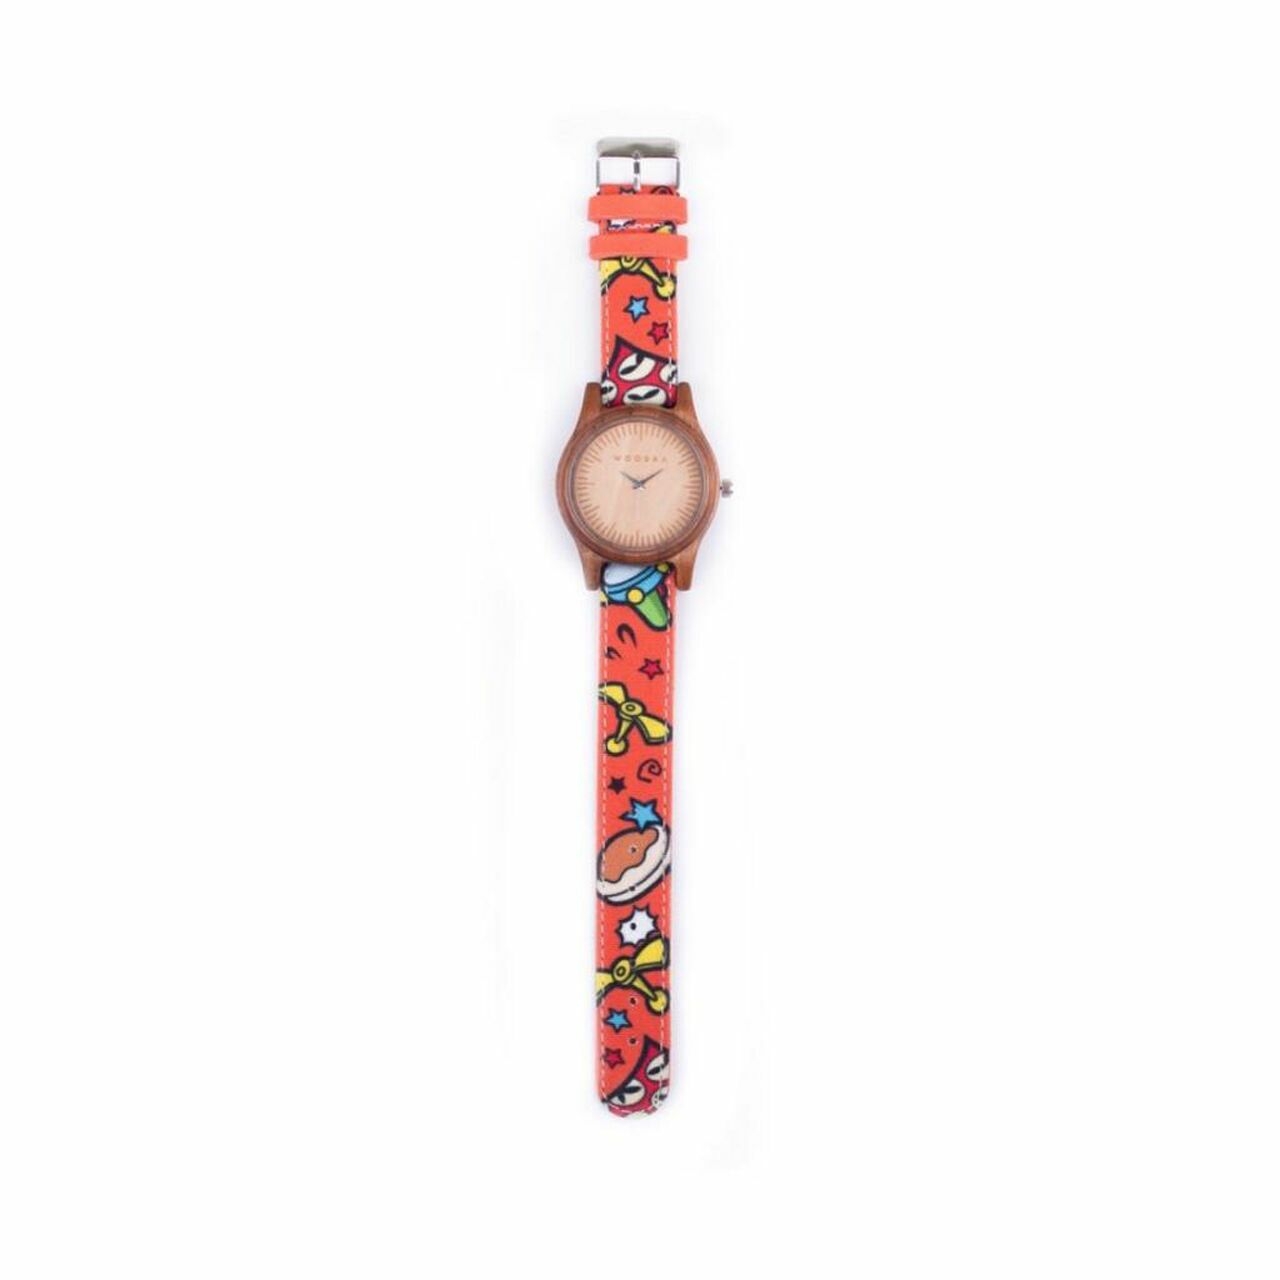 Woodka Loca Jati & Orange Doraemon Wristwatch